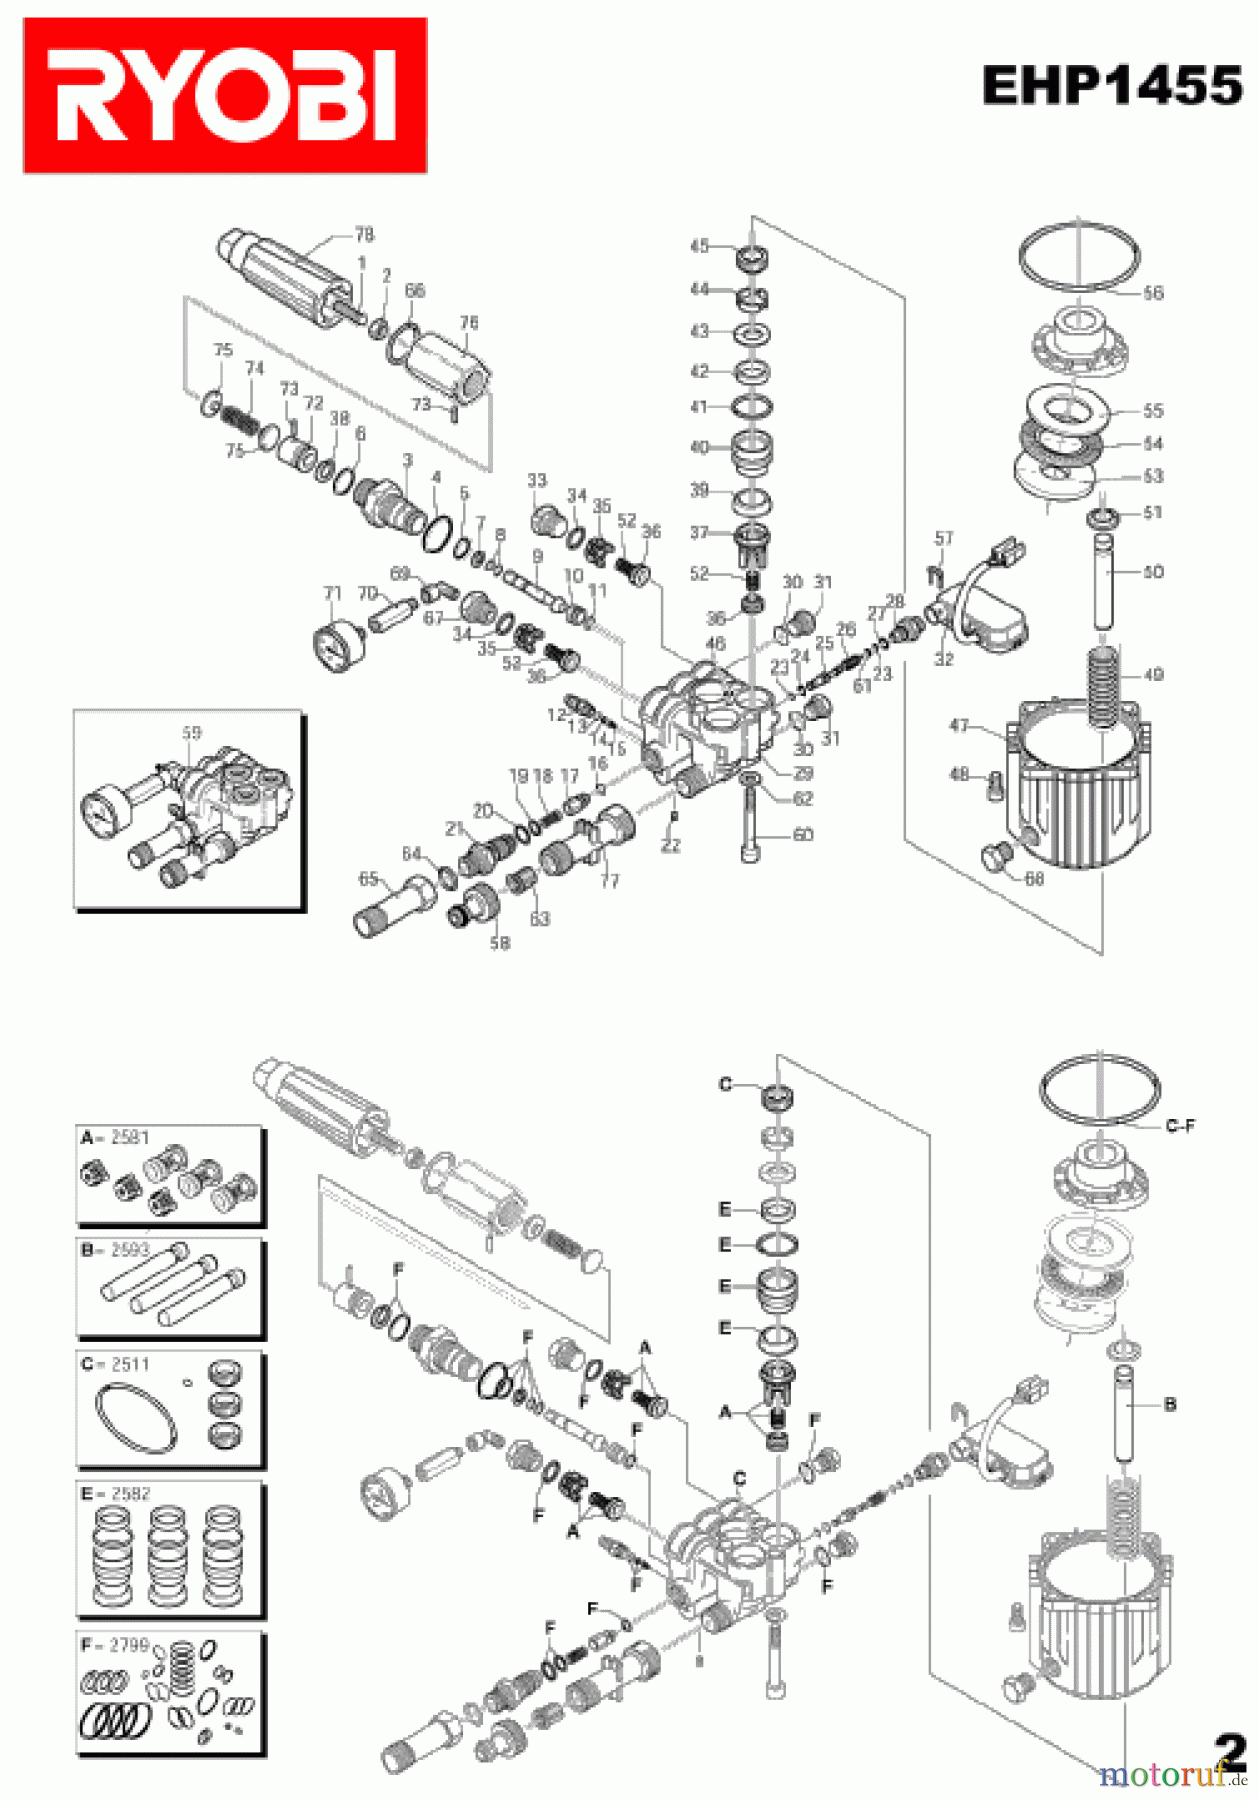  Ryobi Hochdruckreiniger EHP1455 Seite2